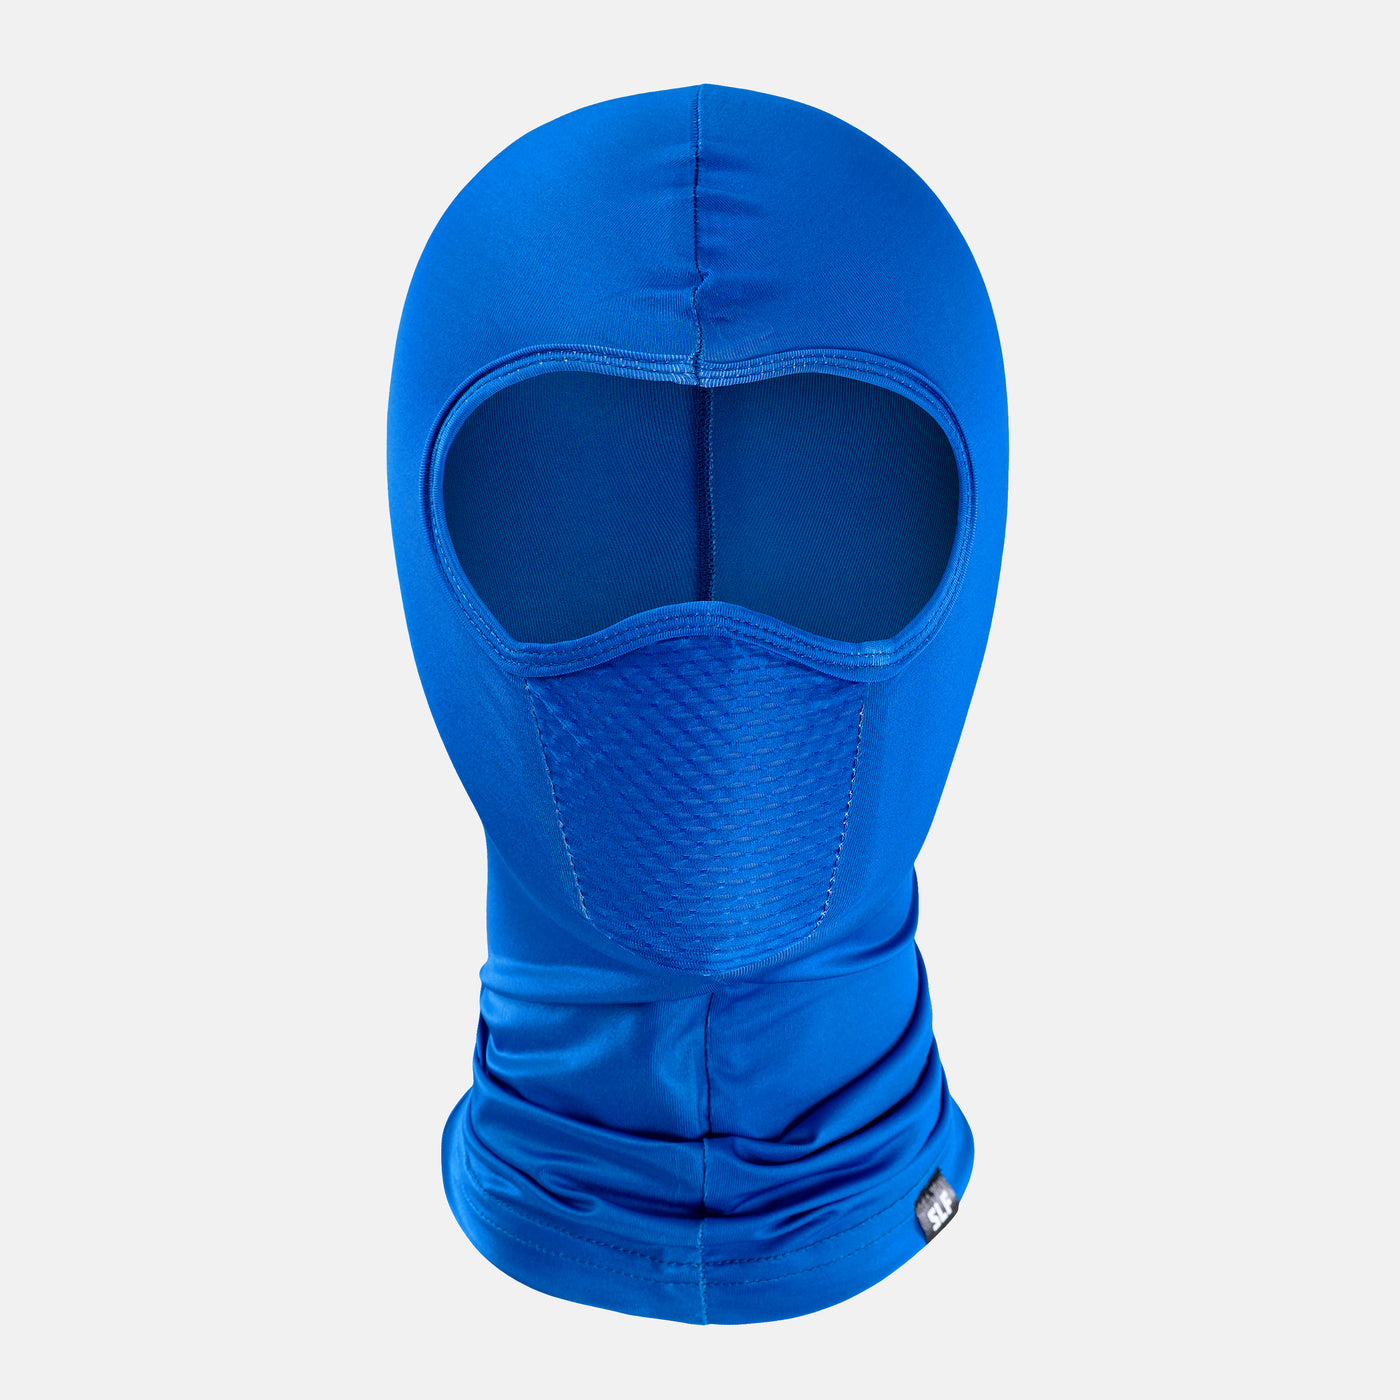 Hue Blue Shiesty Mask